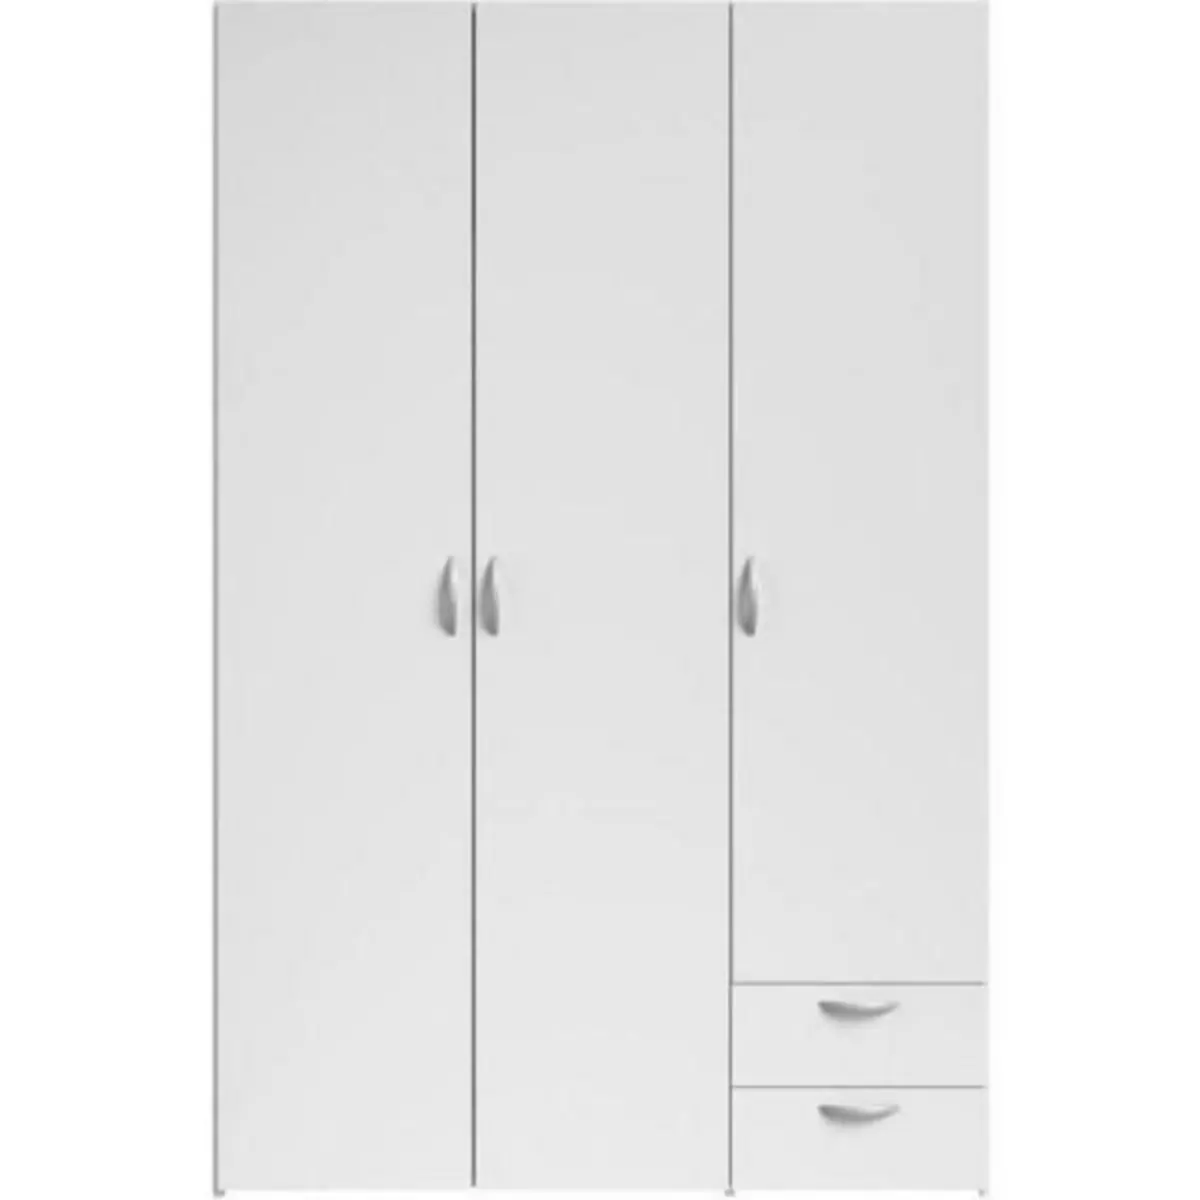 PARISOT Armoire VARIA - Décor blanc - 3 portes + 2 tiroirs - L 120 x H 185 x P 51 cm - PARISOT